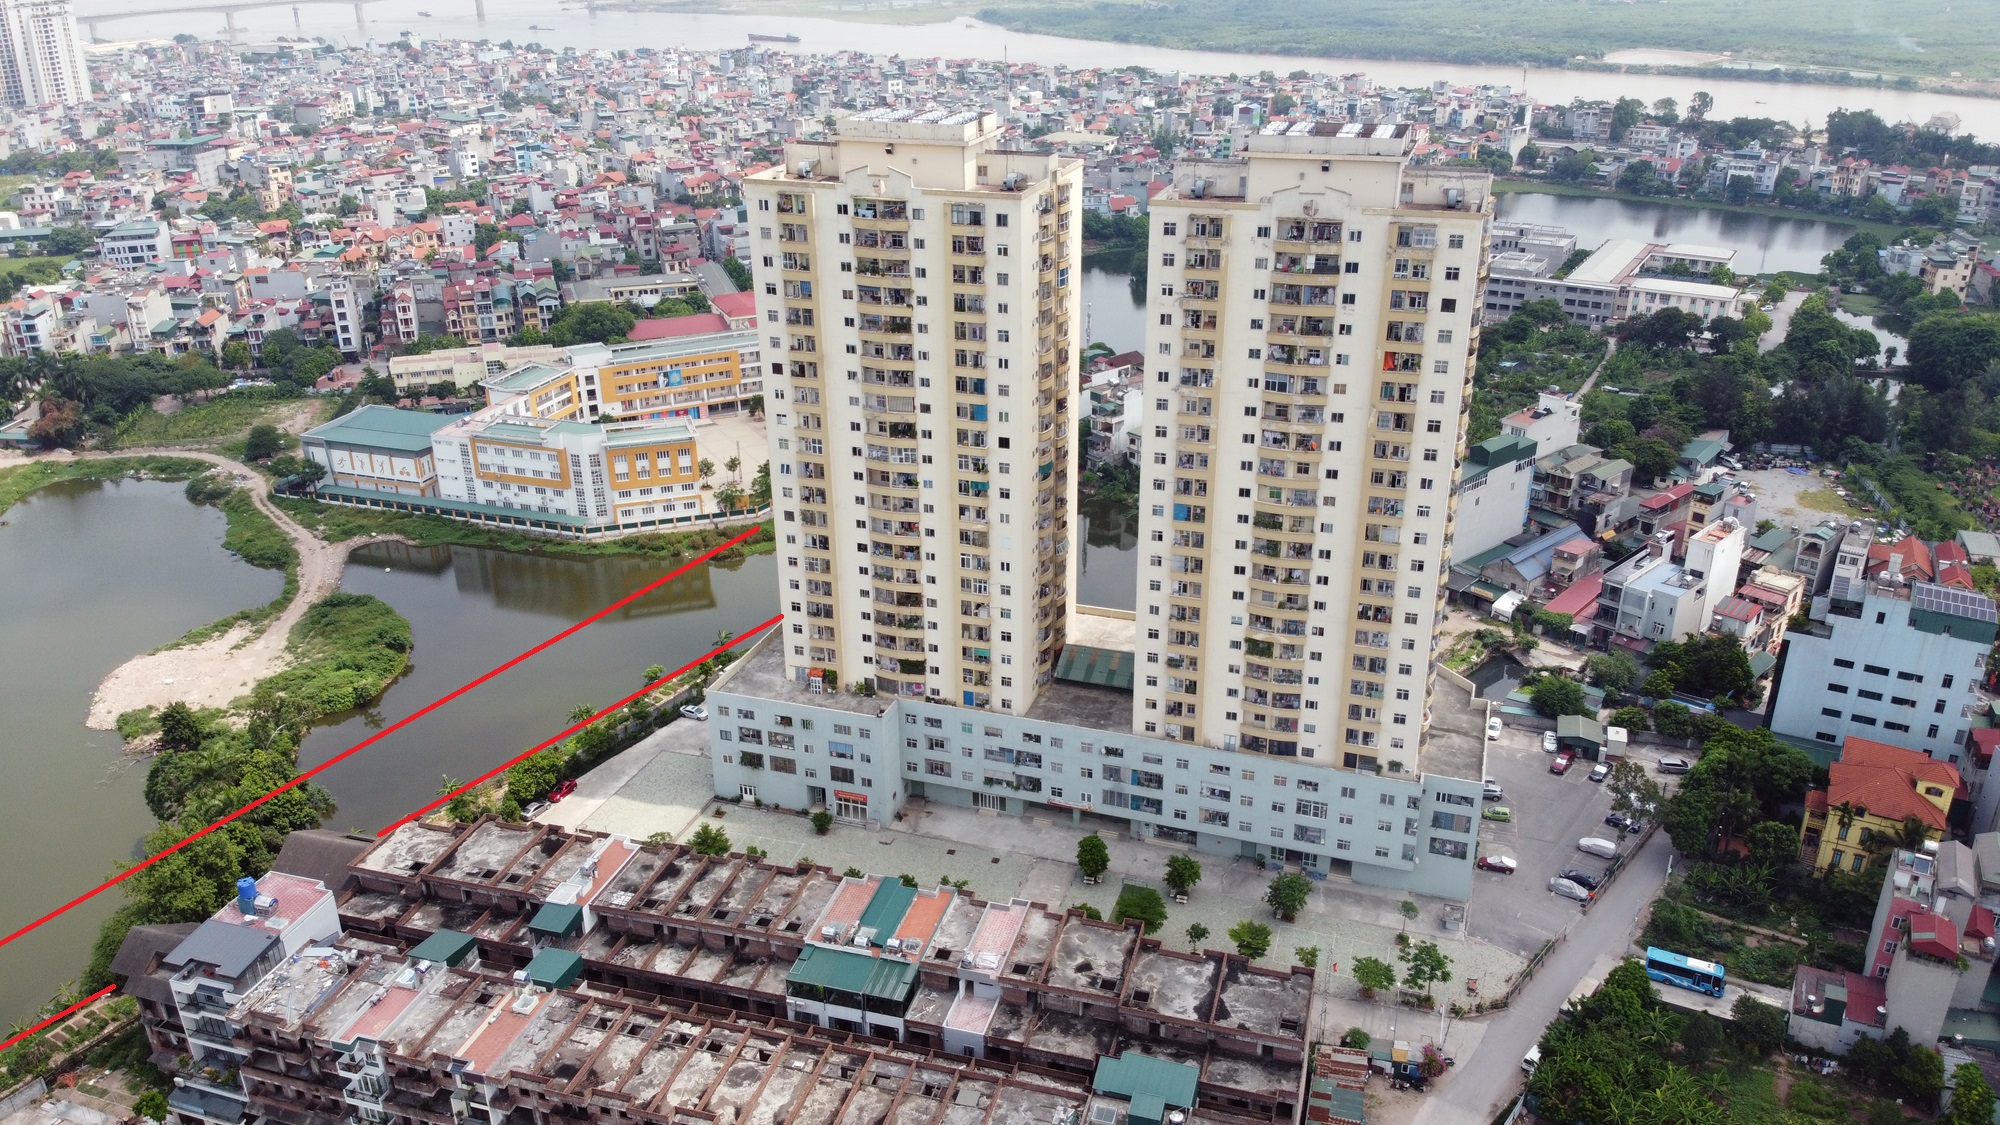 đường sẽ mở theo qui hoạch ở phường Thanh Trì, Hoàng Mai, Hà Nội - Ảnh 4.